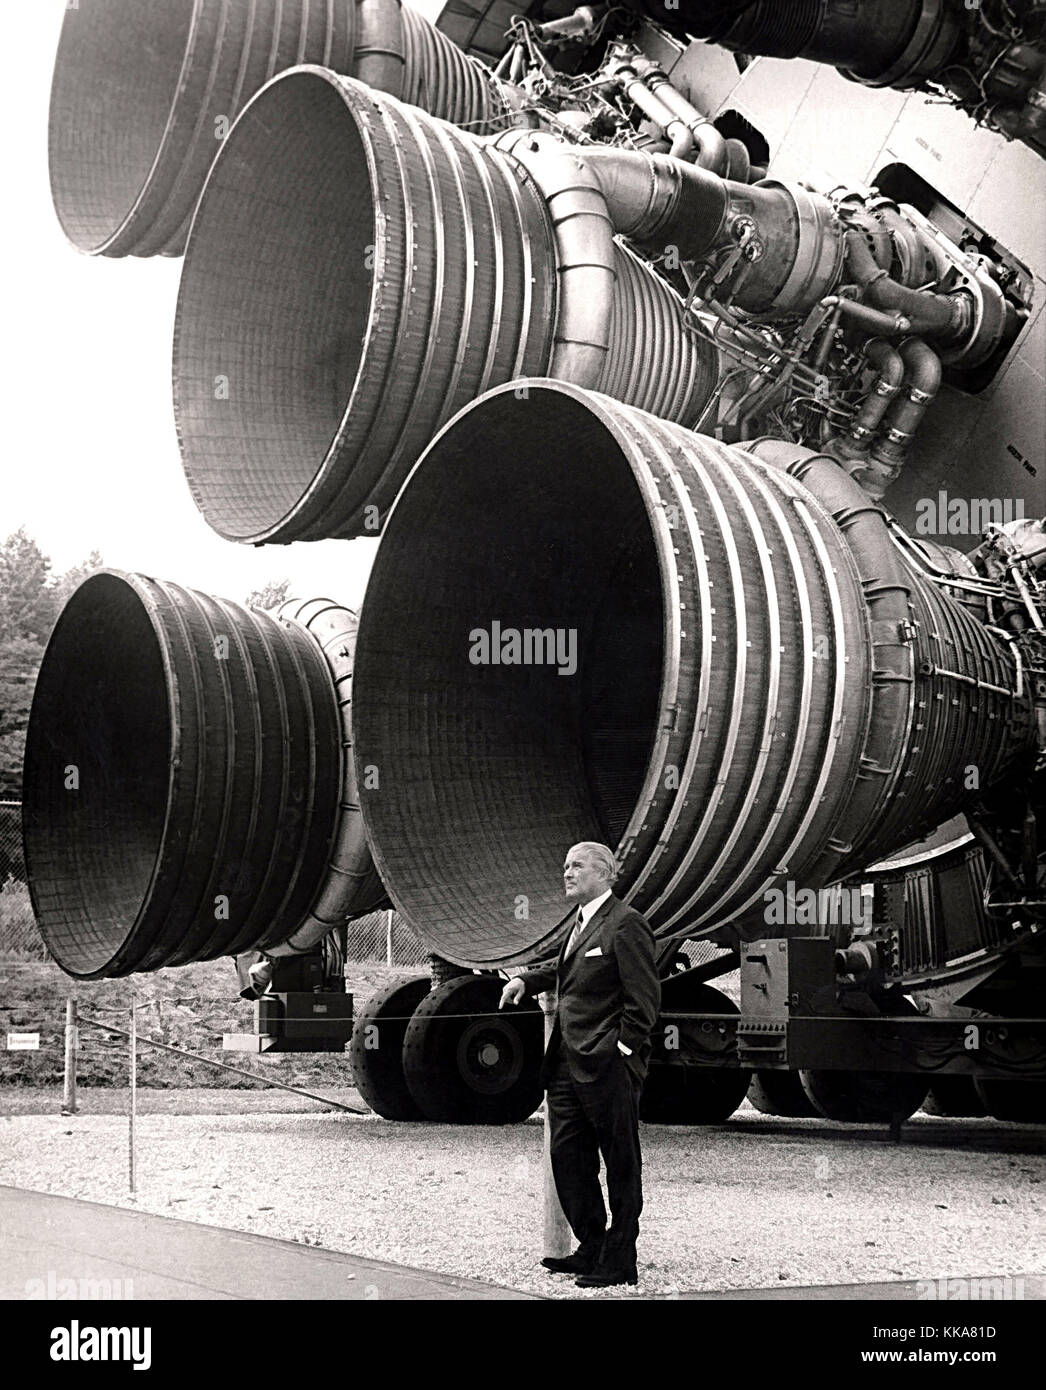 Von Braun con los motores F-1 del Saturno v primera etapa, en el centro de cohetes y espacial de EE.UU. dr. von Braun. wernher magnus maximilian Freiherr von Braun, el Dr. Wernher von Braun, alemán, después american, ingeniero aeroespacial y arquitecto espacial inventó el cohete V-2 para la Alemania nazi y el Saturn V para los estados unidos Foto de stock